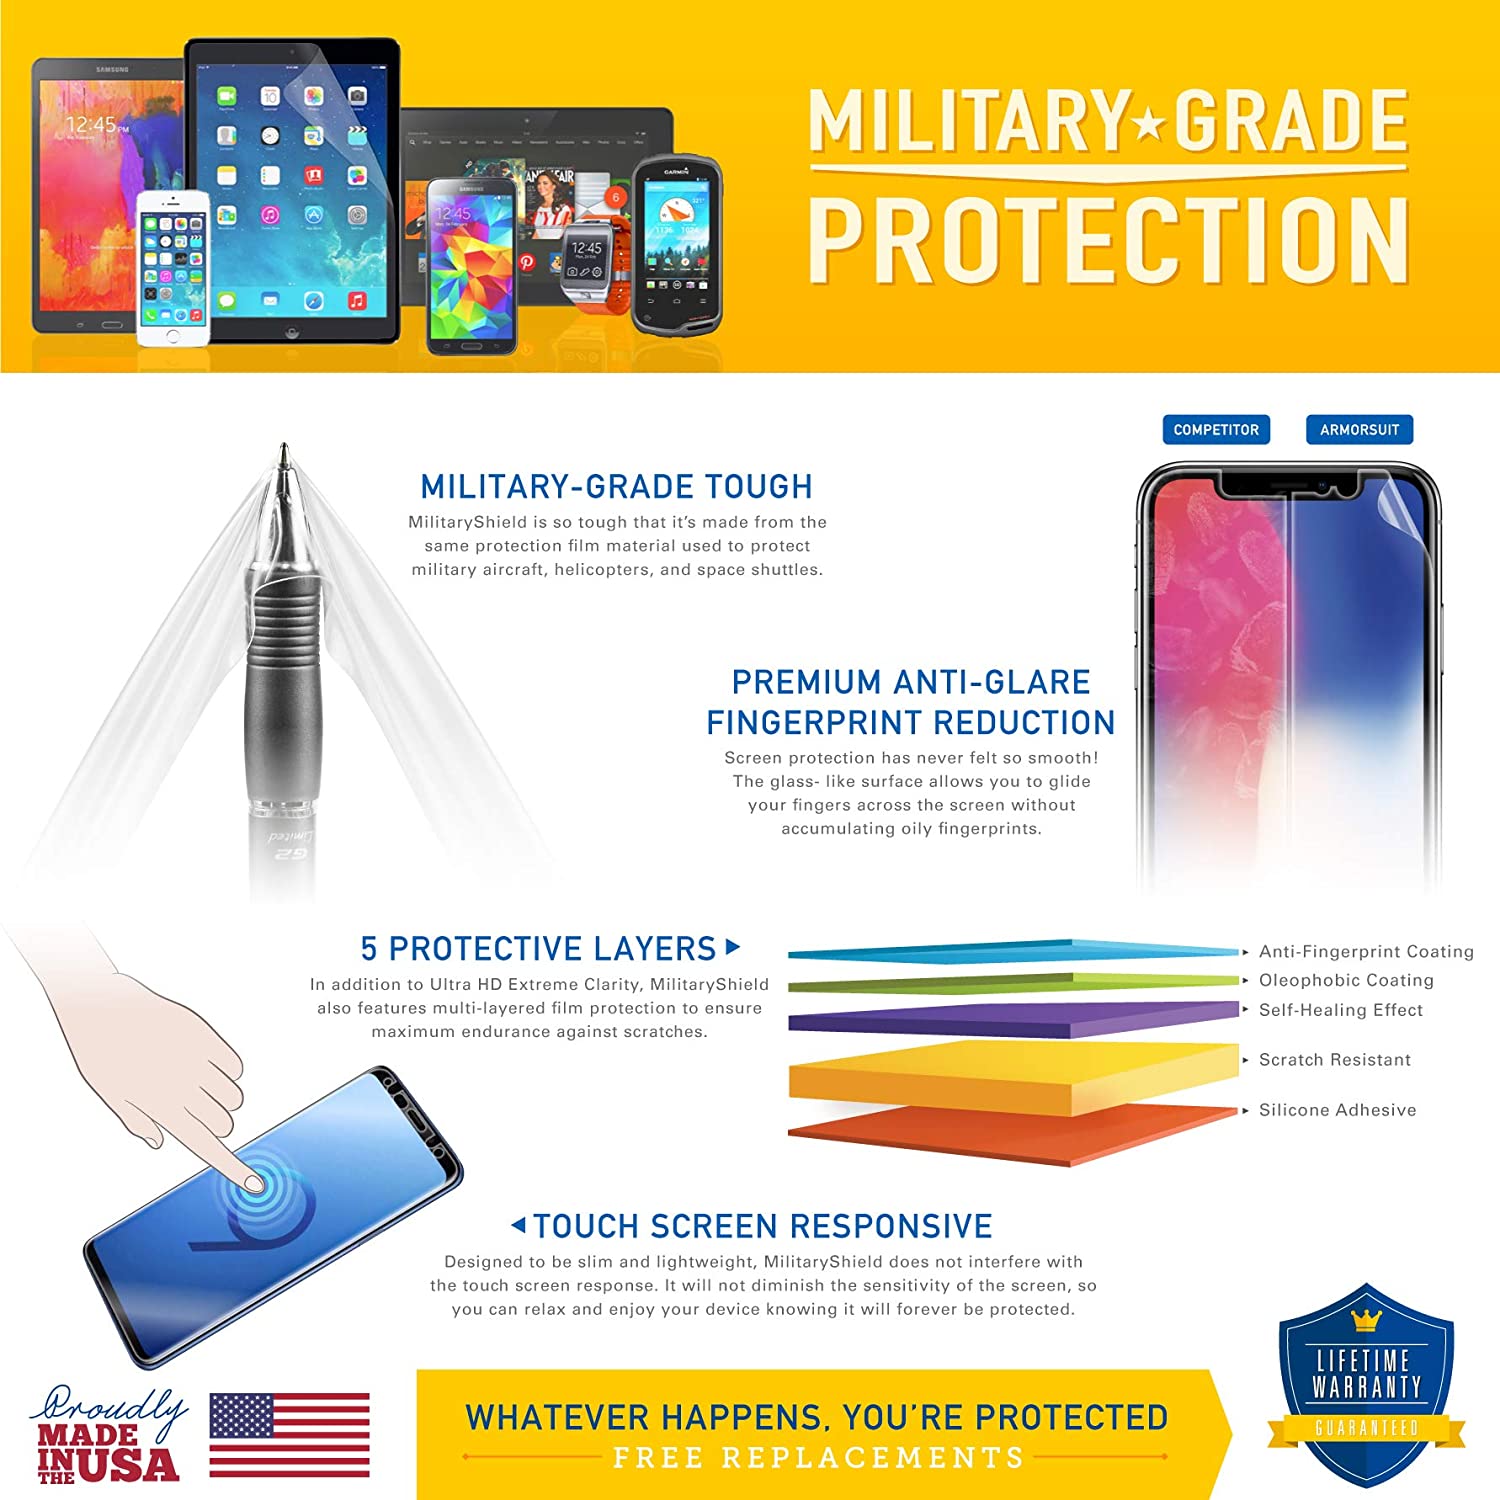 LG Optimus G (AT&T) Full Body Skin Protector